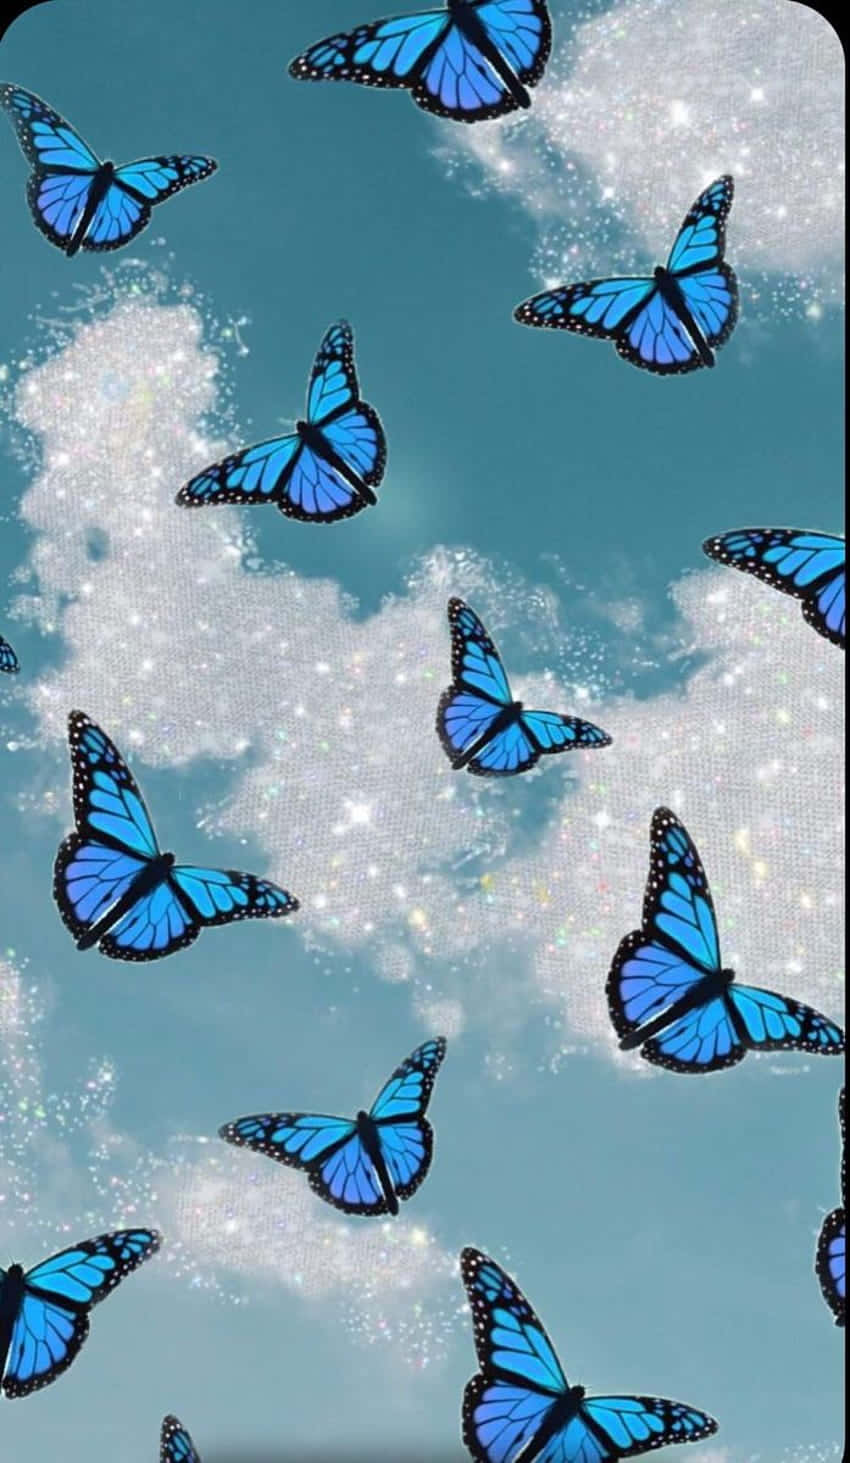 Einwunderschöner Glitzernder Schmetterling Flattert Durch Die Luft. Wallpaper